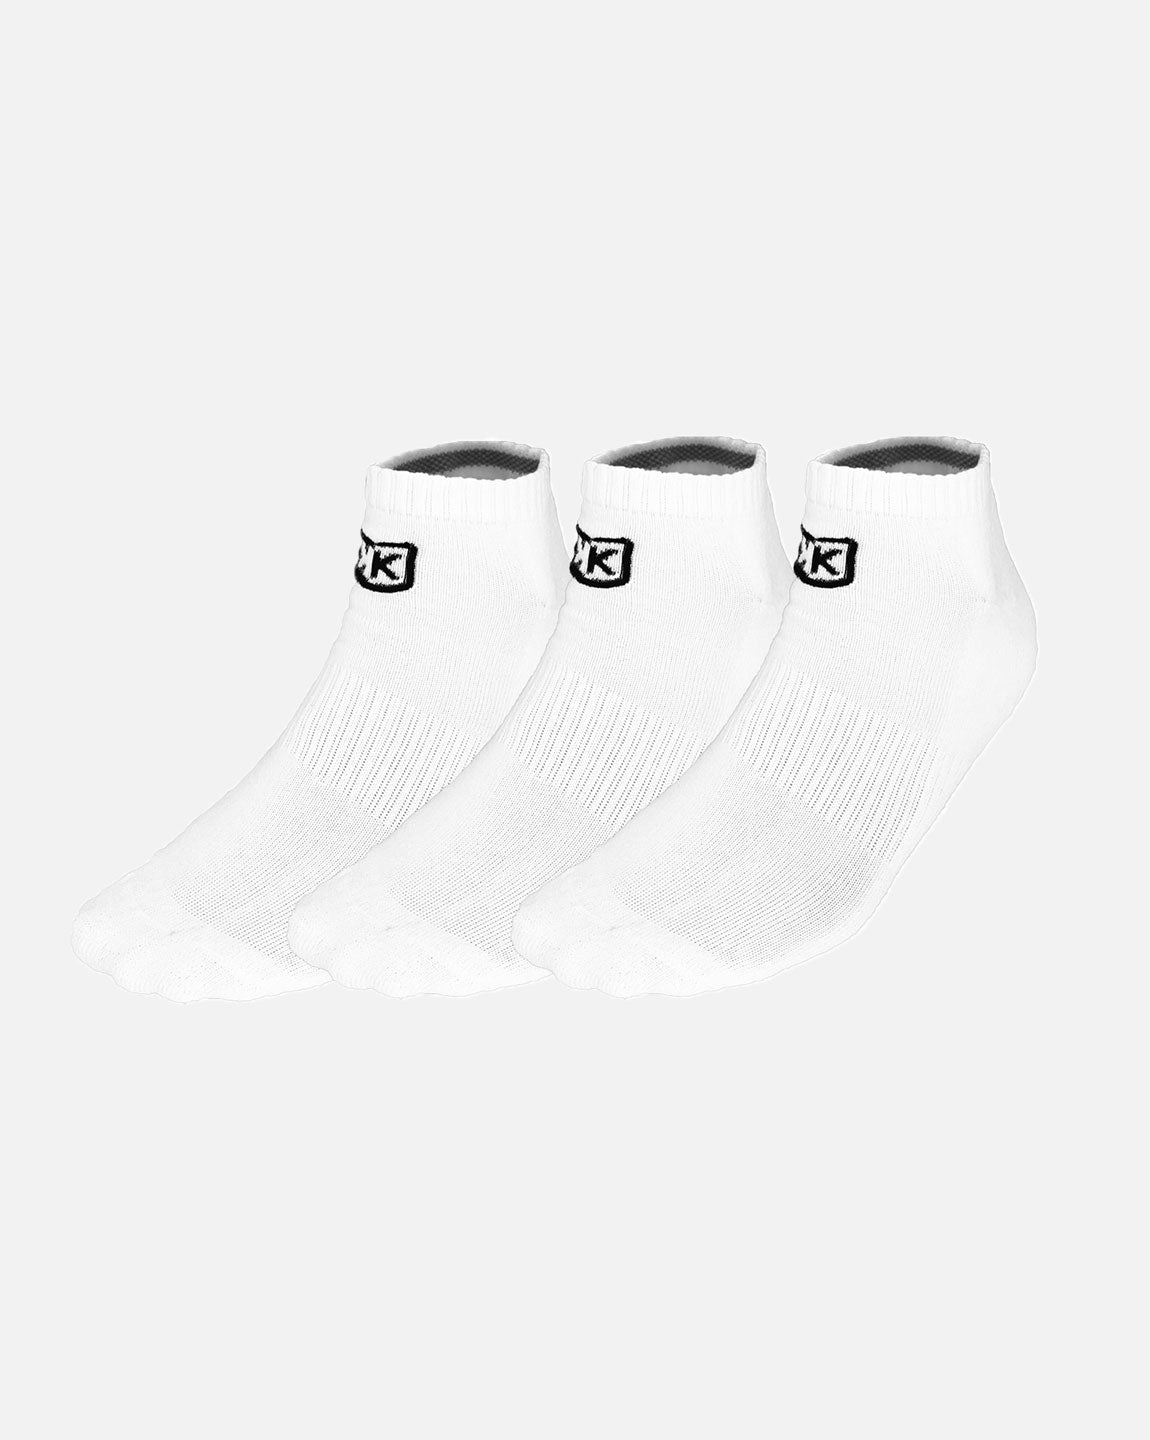 mit – kurzen FK-Socken Weiß Footkorner 3 – Paar Packung